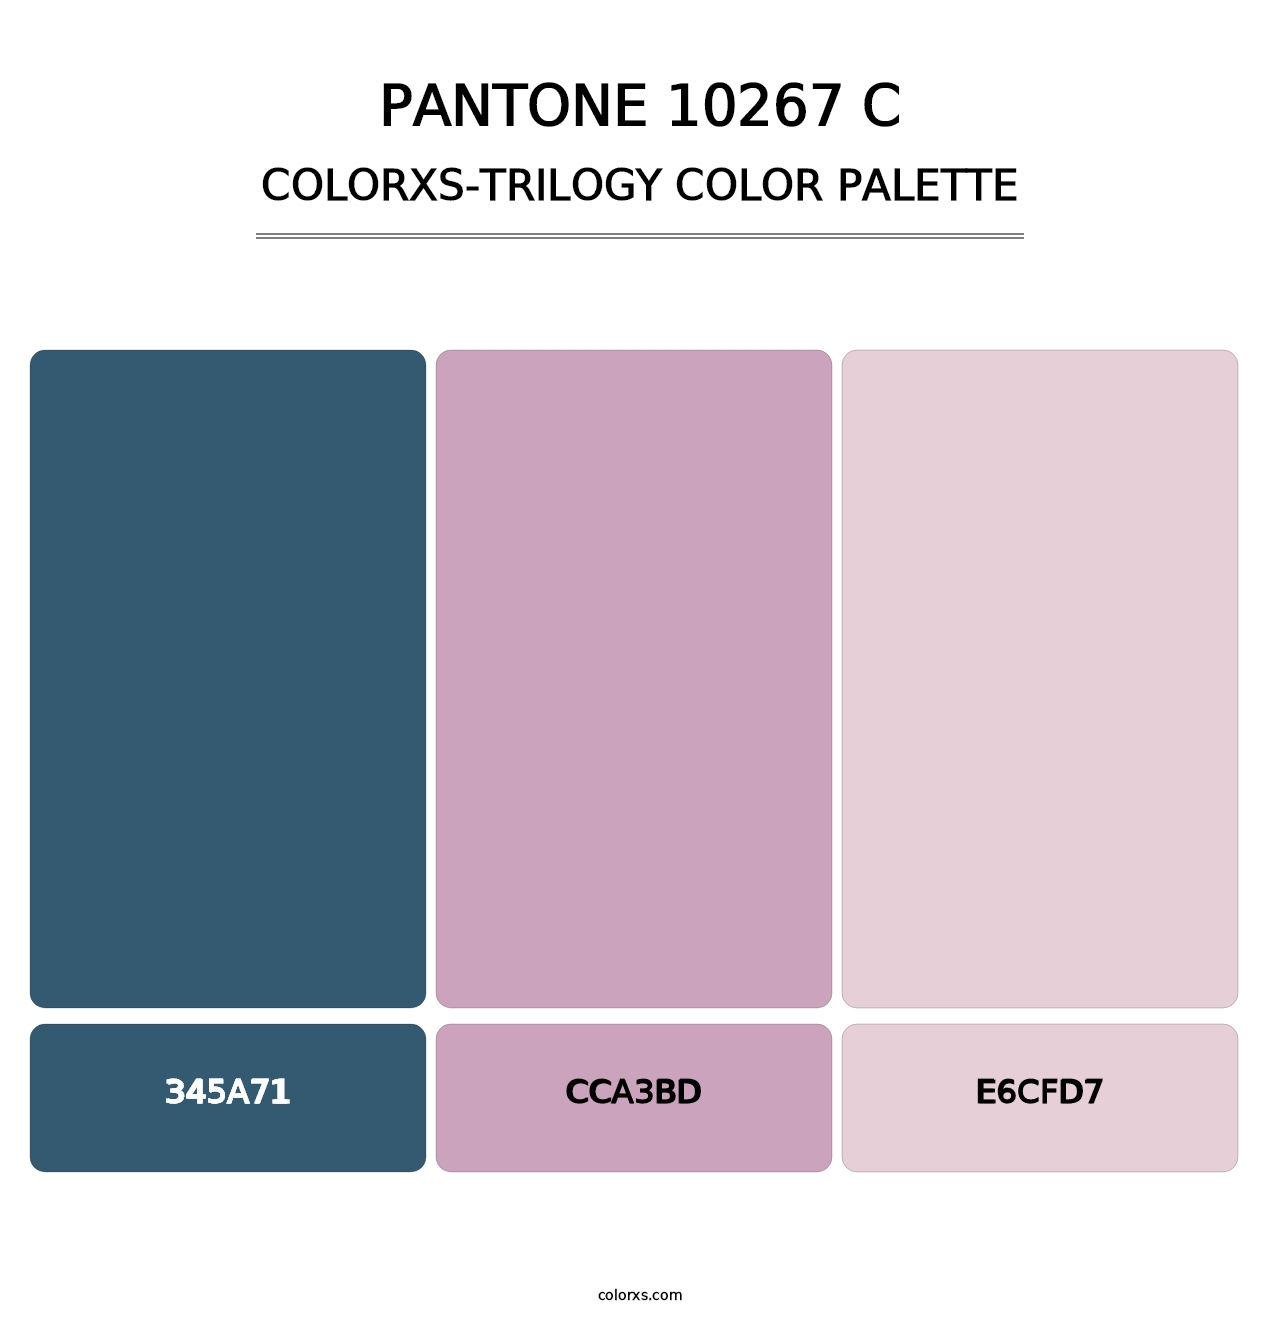 PANTONE 10267 C - Colorxs Trilogy Palette